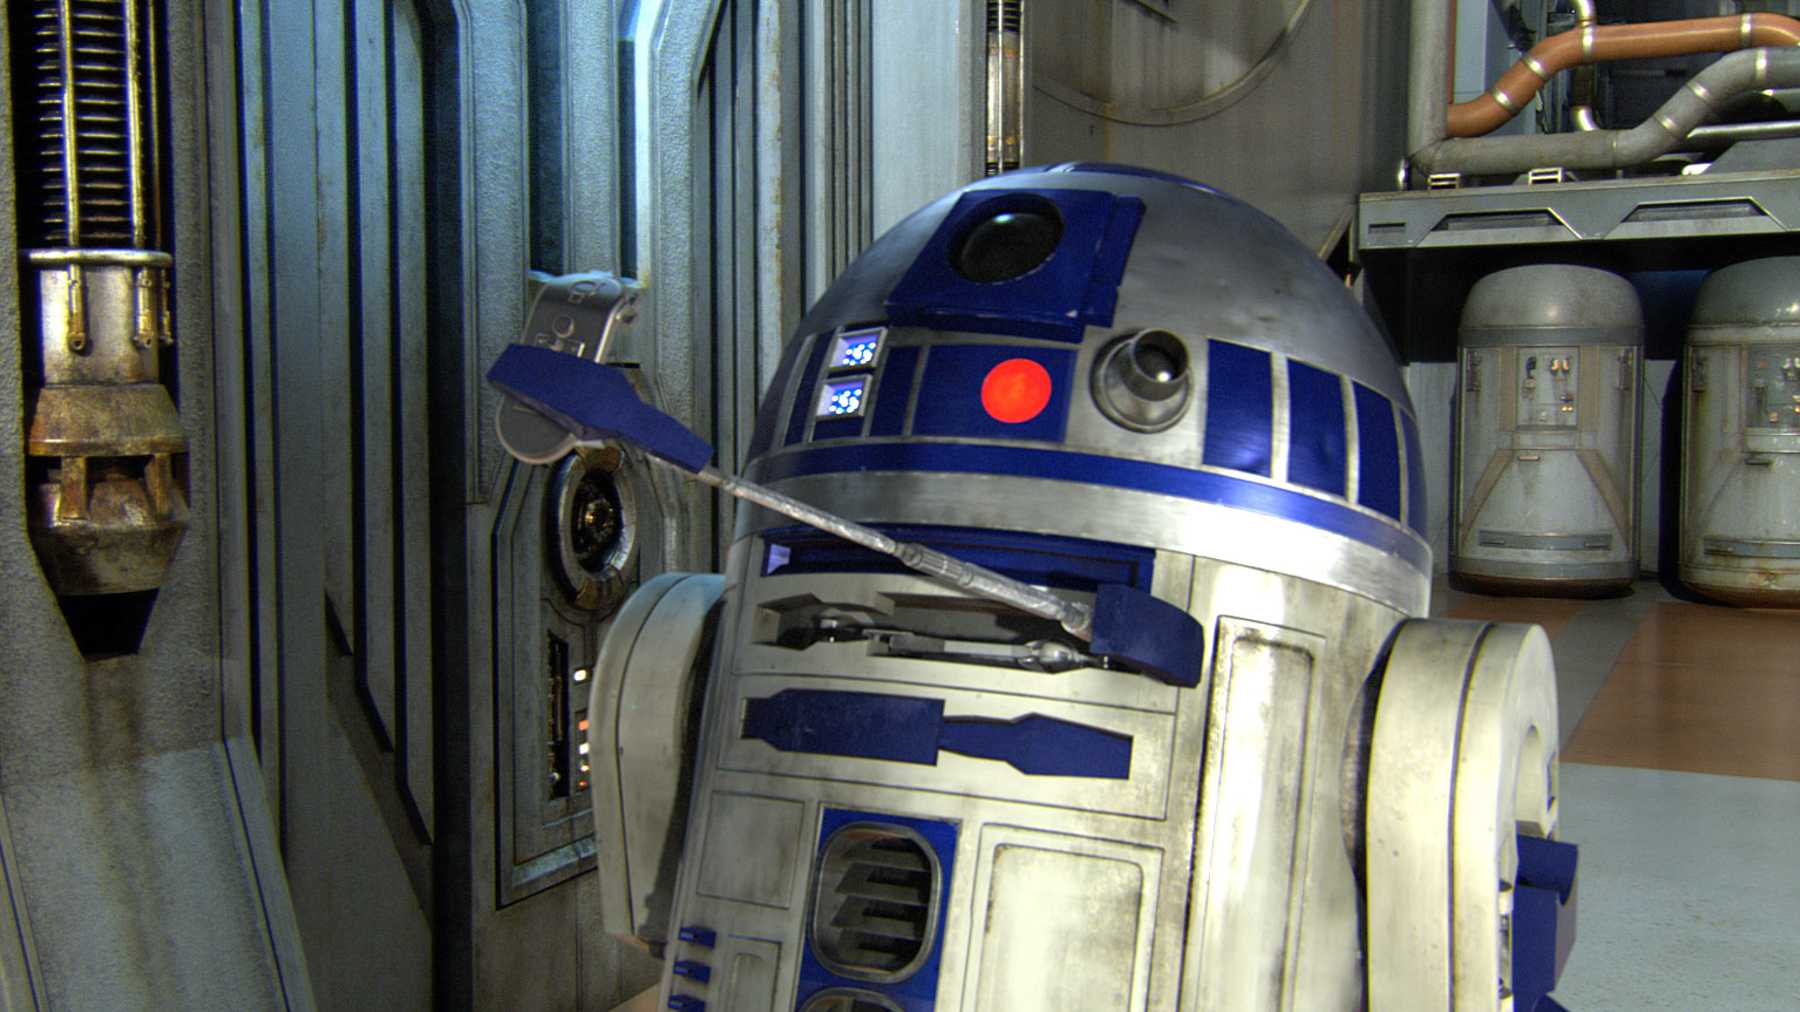 Star Wars R2 D2